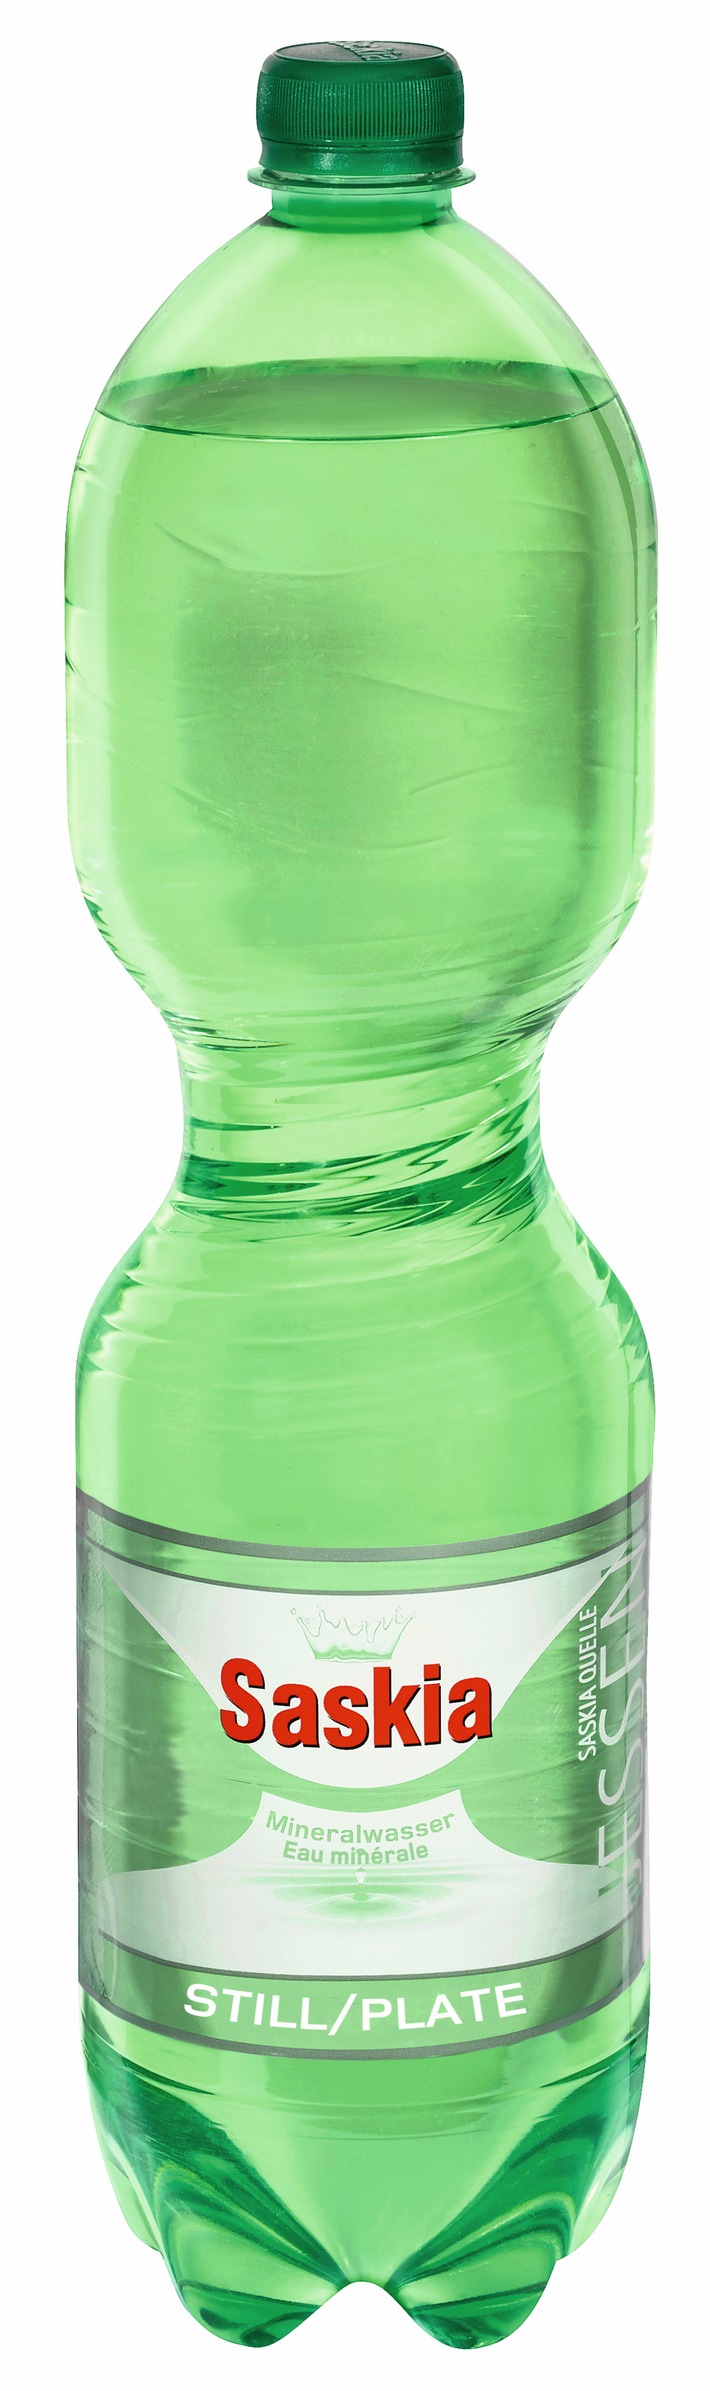 100 % de PET recyclé : Lidl Suisse transforme les bouteilles d&#039;eau